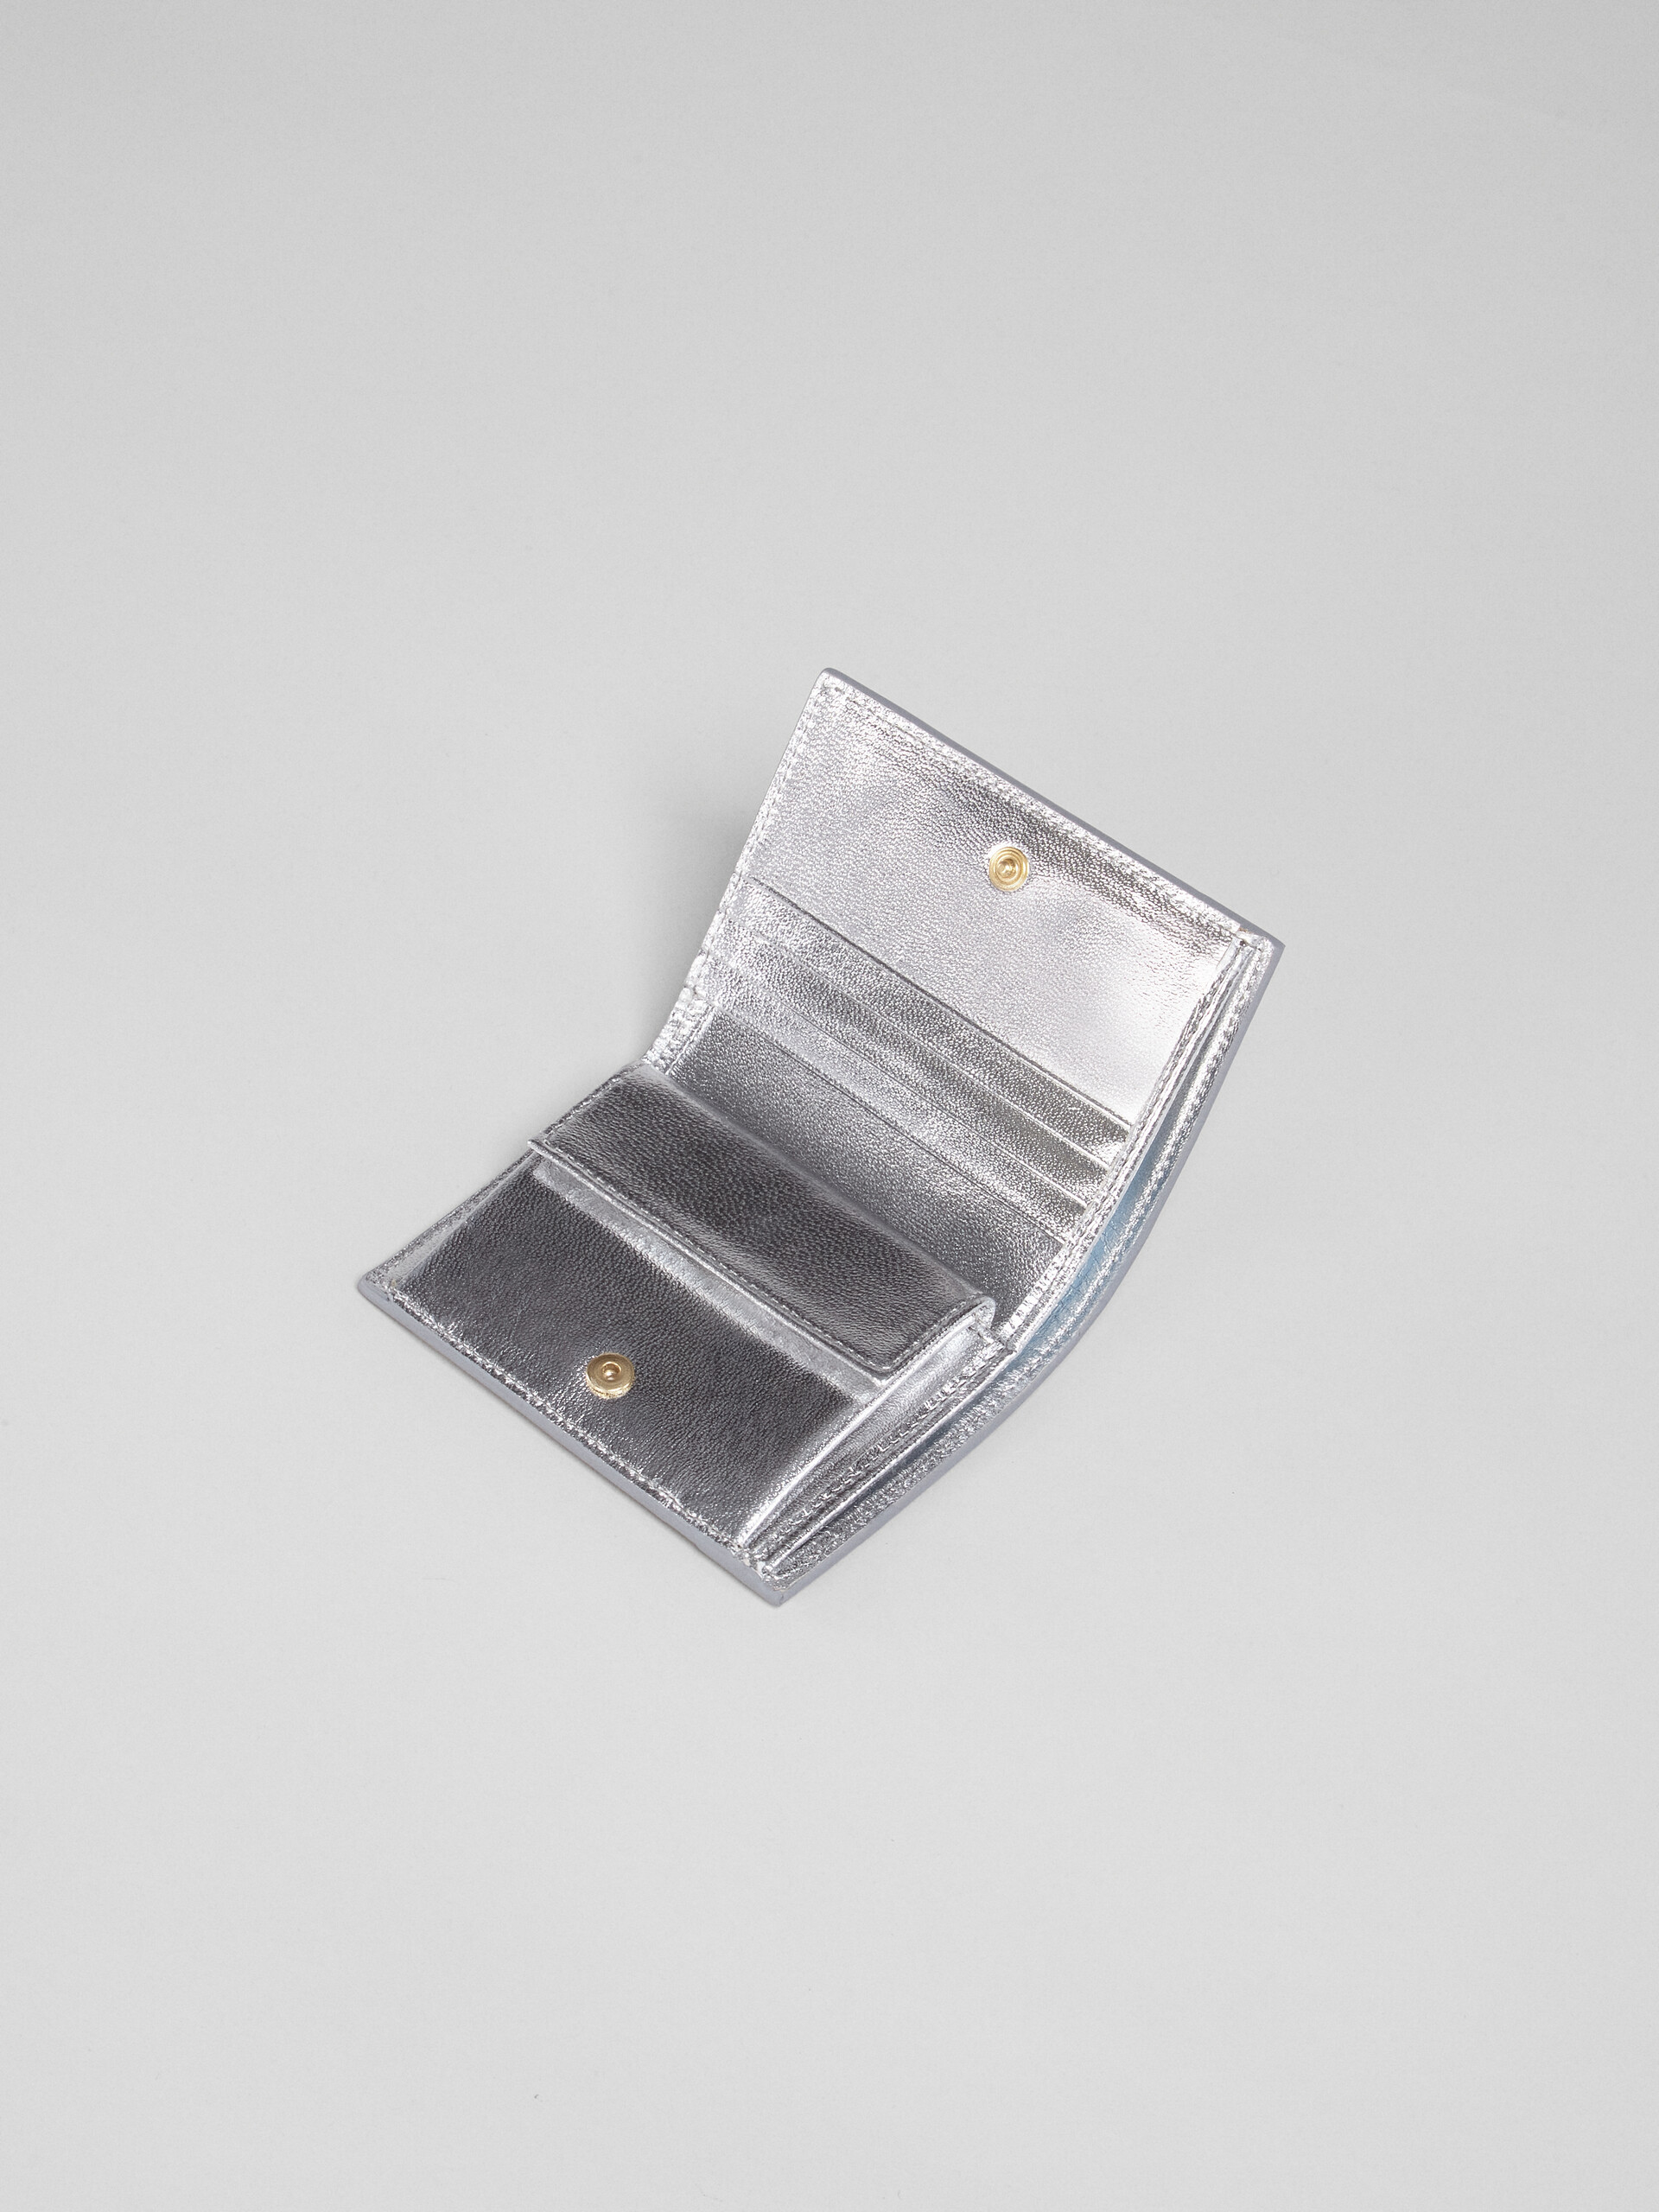 シルバーメタリック調 ナッパレザー二つ折りウォレット - 財布 - Image 3